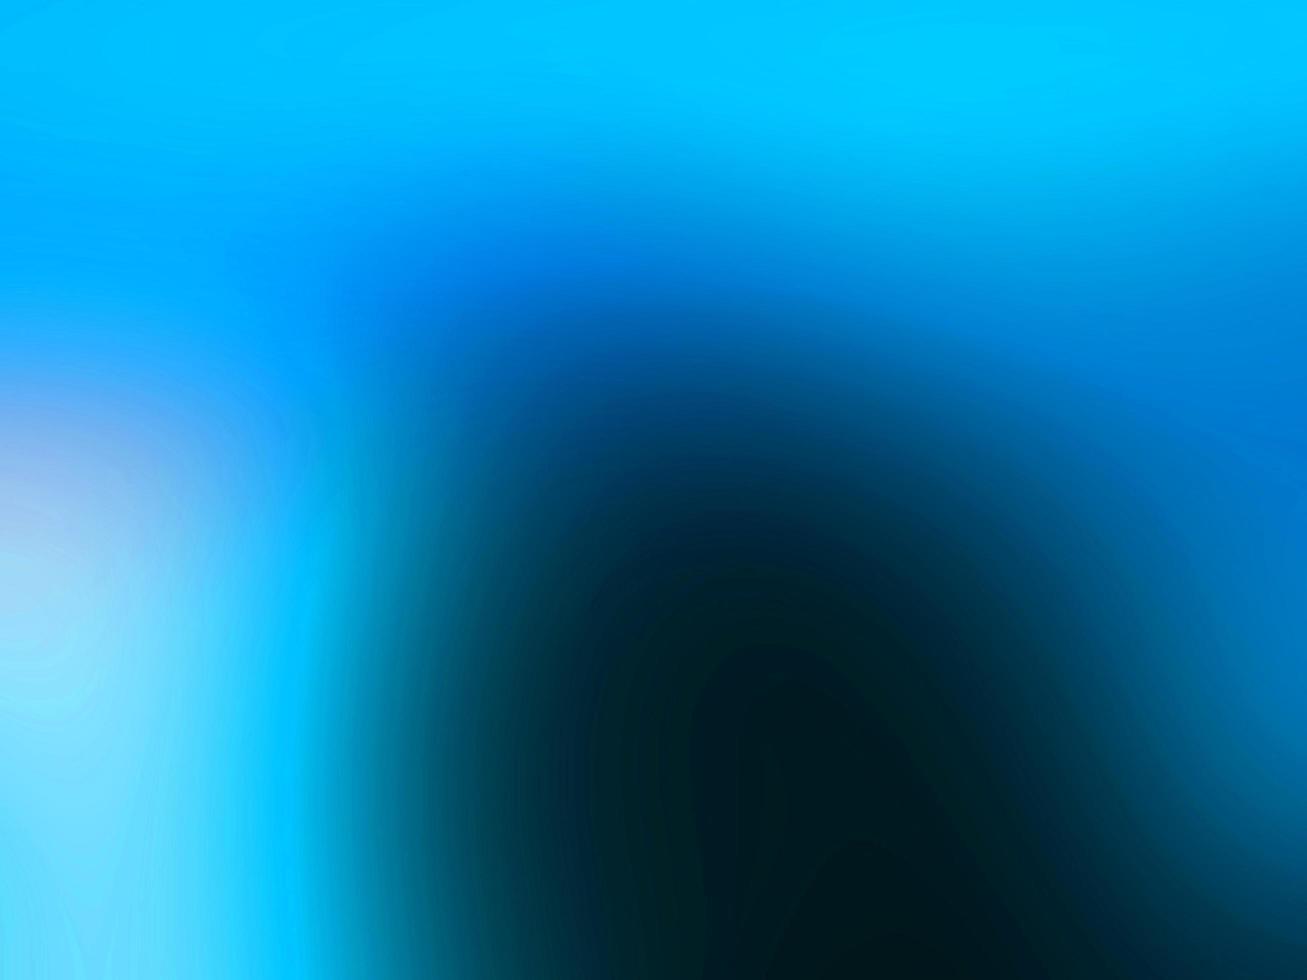 abstrakt hell meerblau bunt subtil verschwommen schöne weiche helle verlaufstextur auf blau. foto